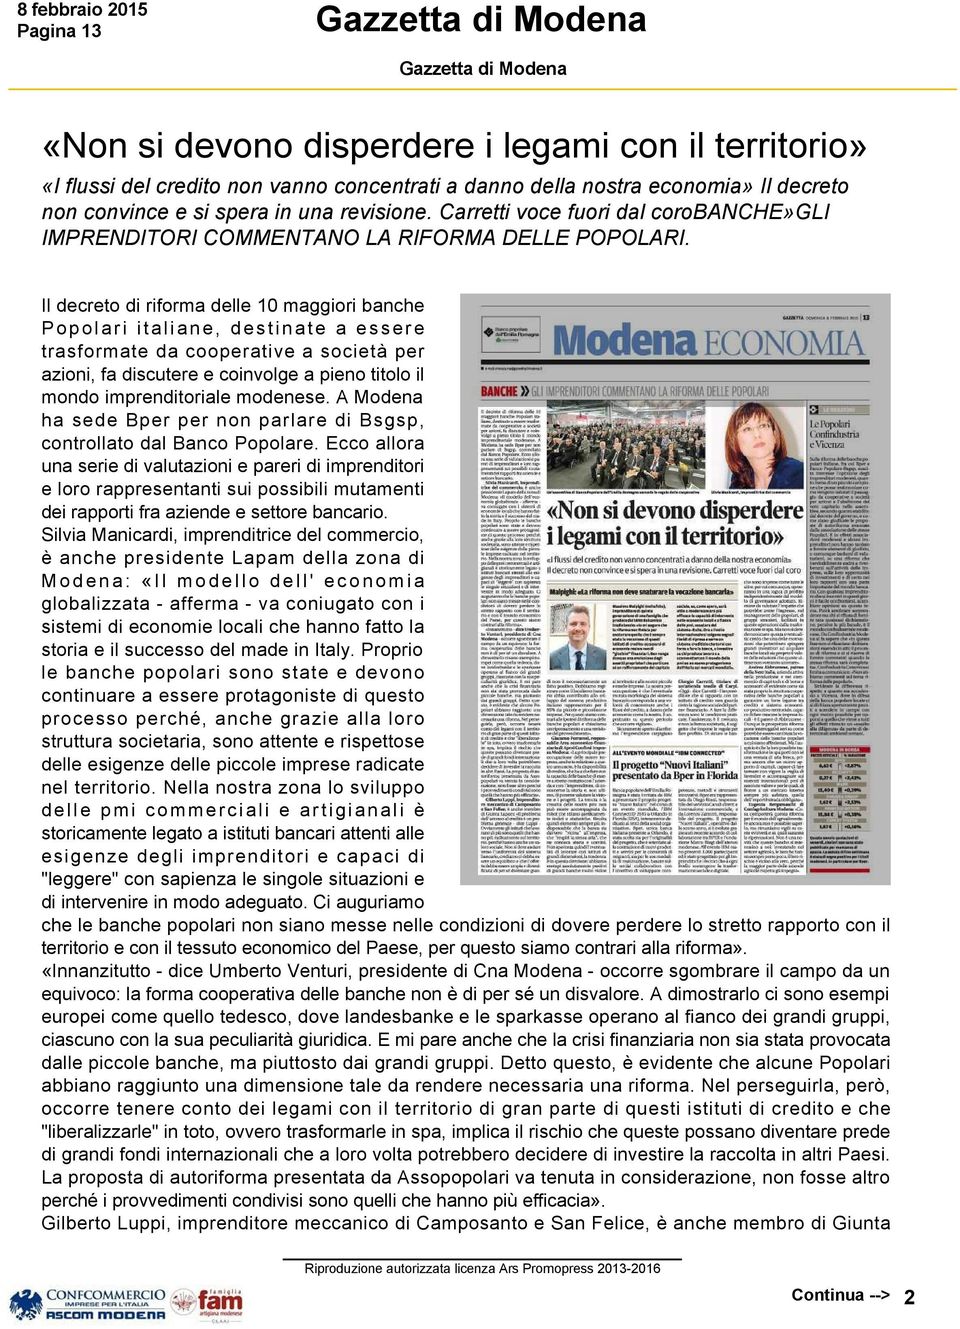 Il decreto di riforma delle 10 maggiori banche Popolari italiane, destinate a essere trasformate da cooperative a società per azioni, fa discutere e coinvolge a pieno titolo il mondo imprenditoriale